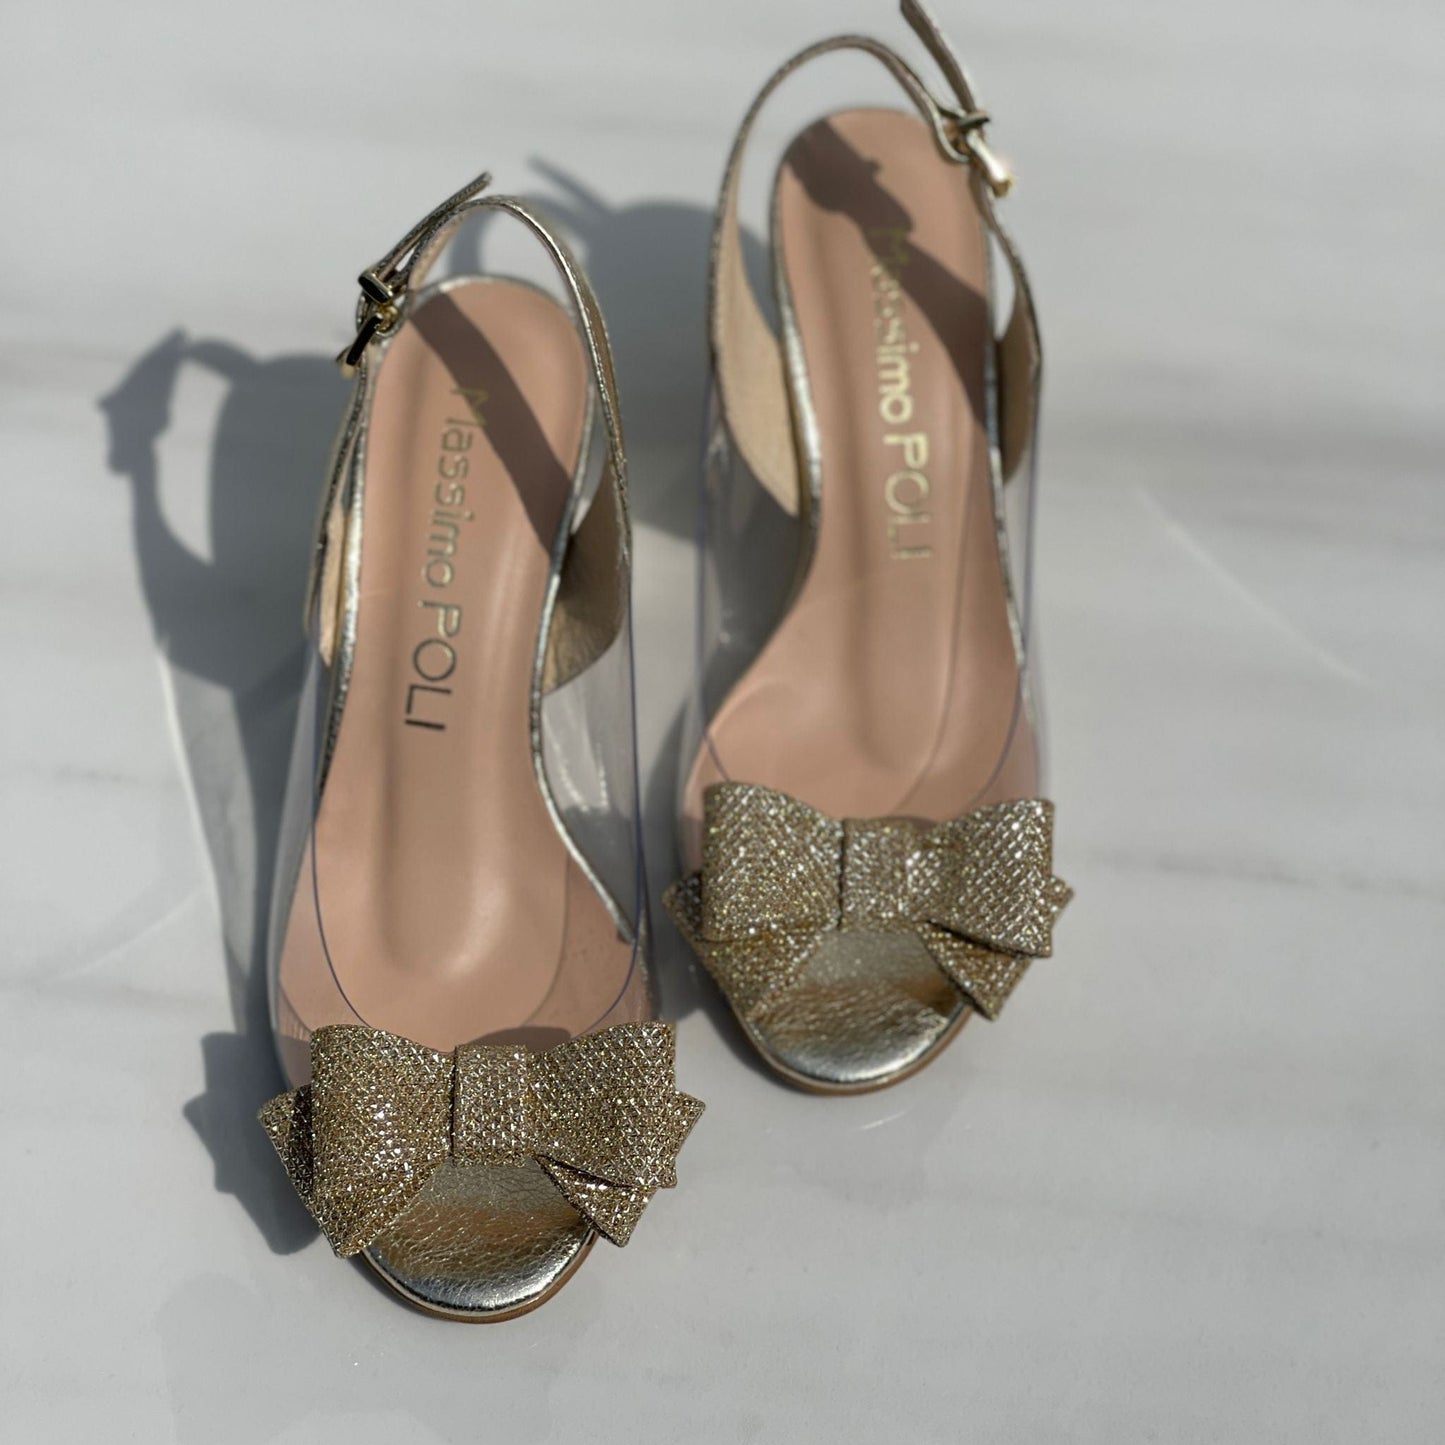 Open toe petite wedding heels in gold 